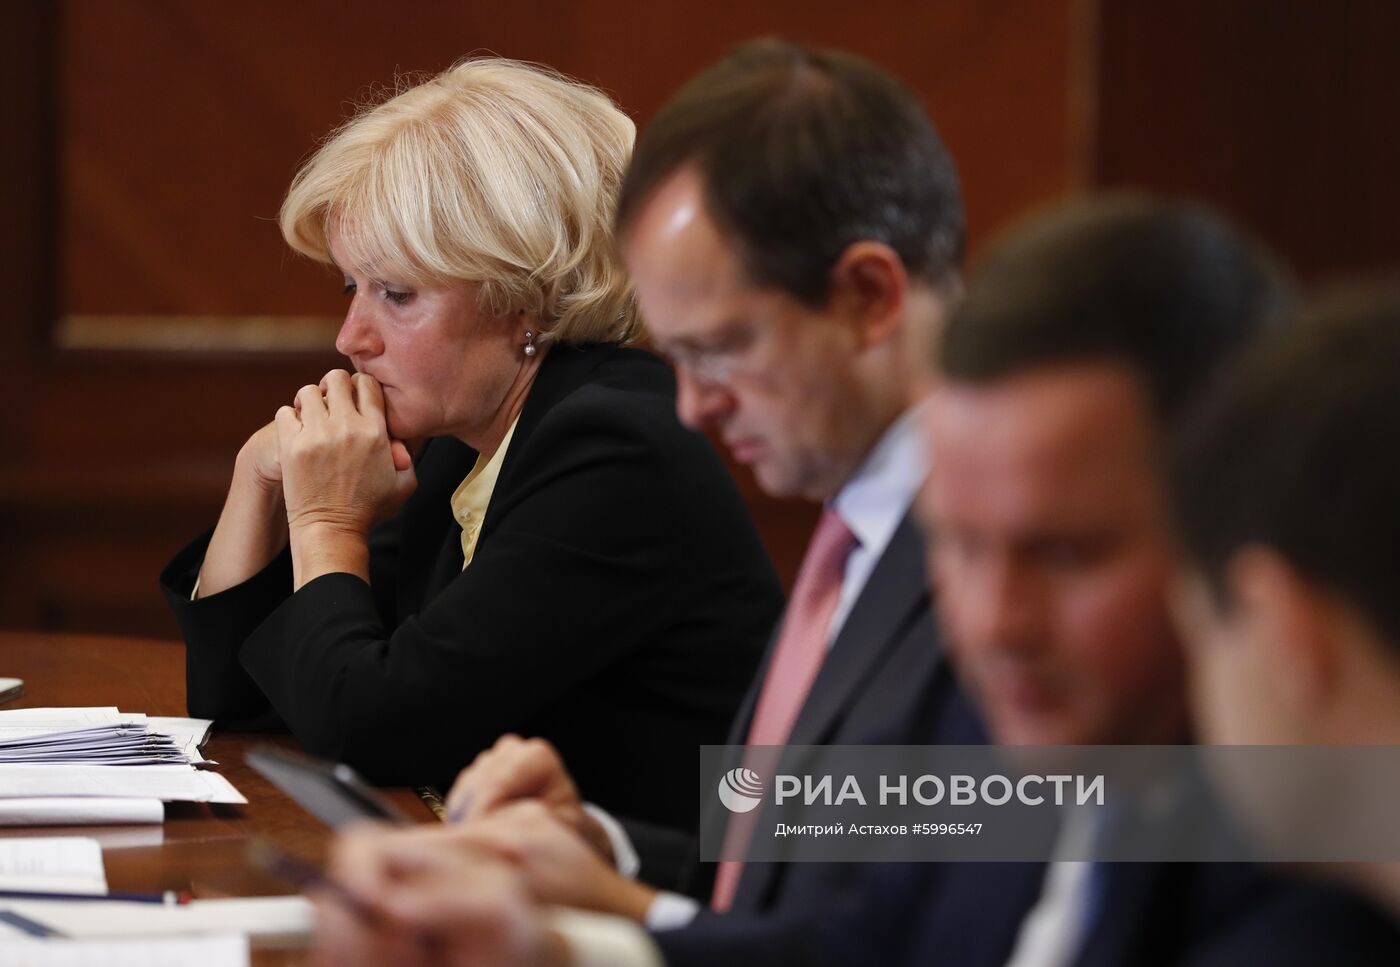 Премьер-министр РФ Д. Медведев провел совещания о расходах бюджета